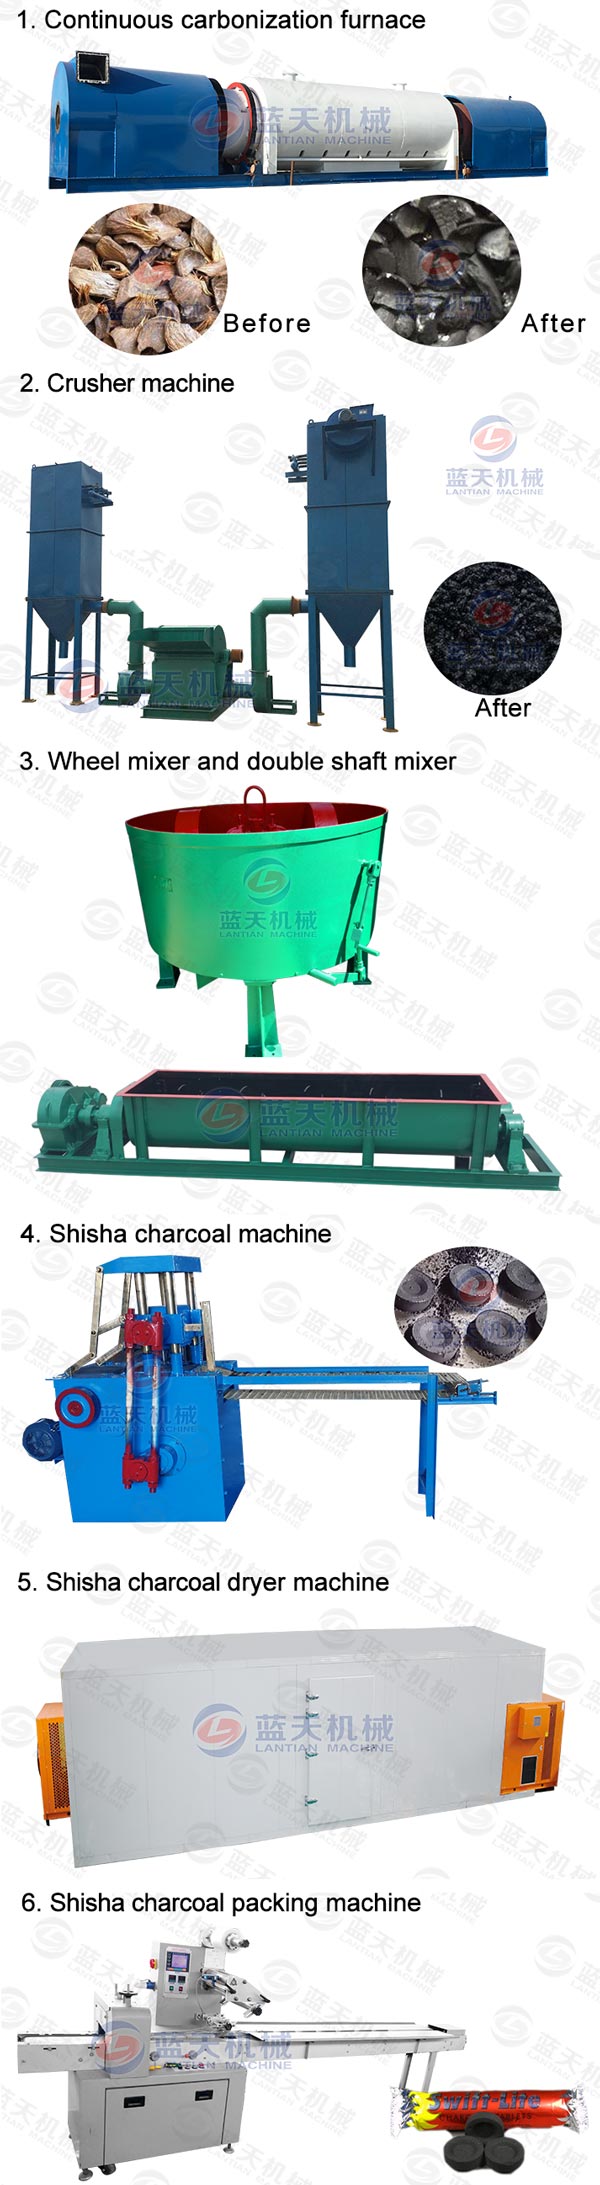 shisha charcoal making machine